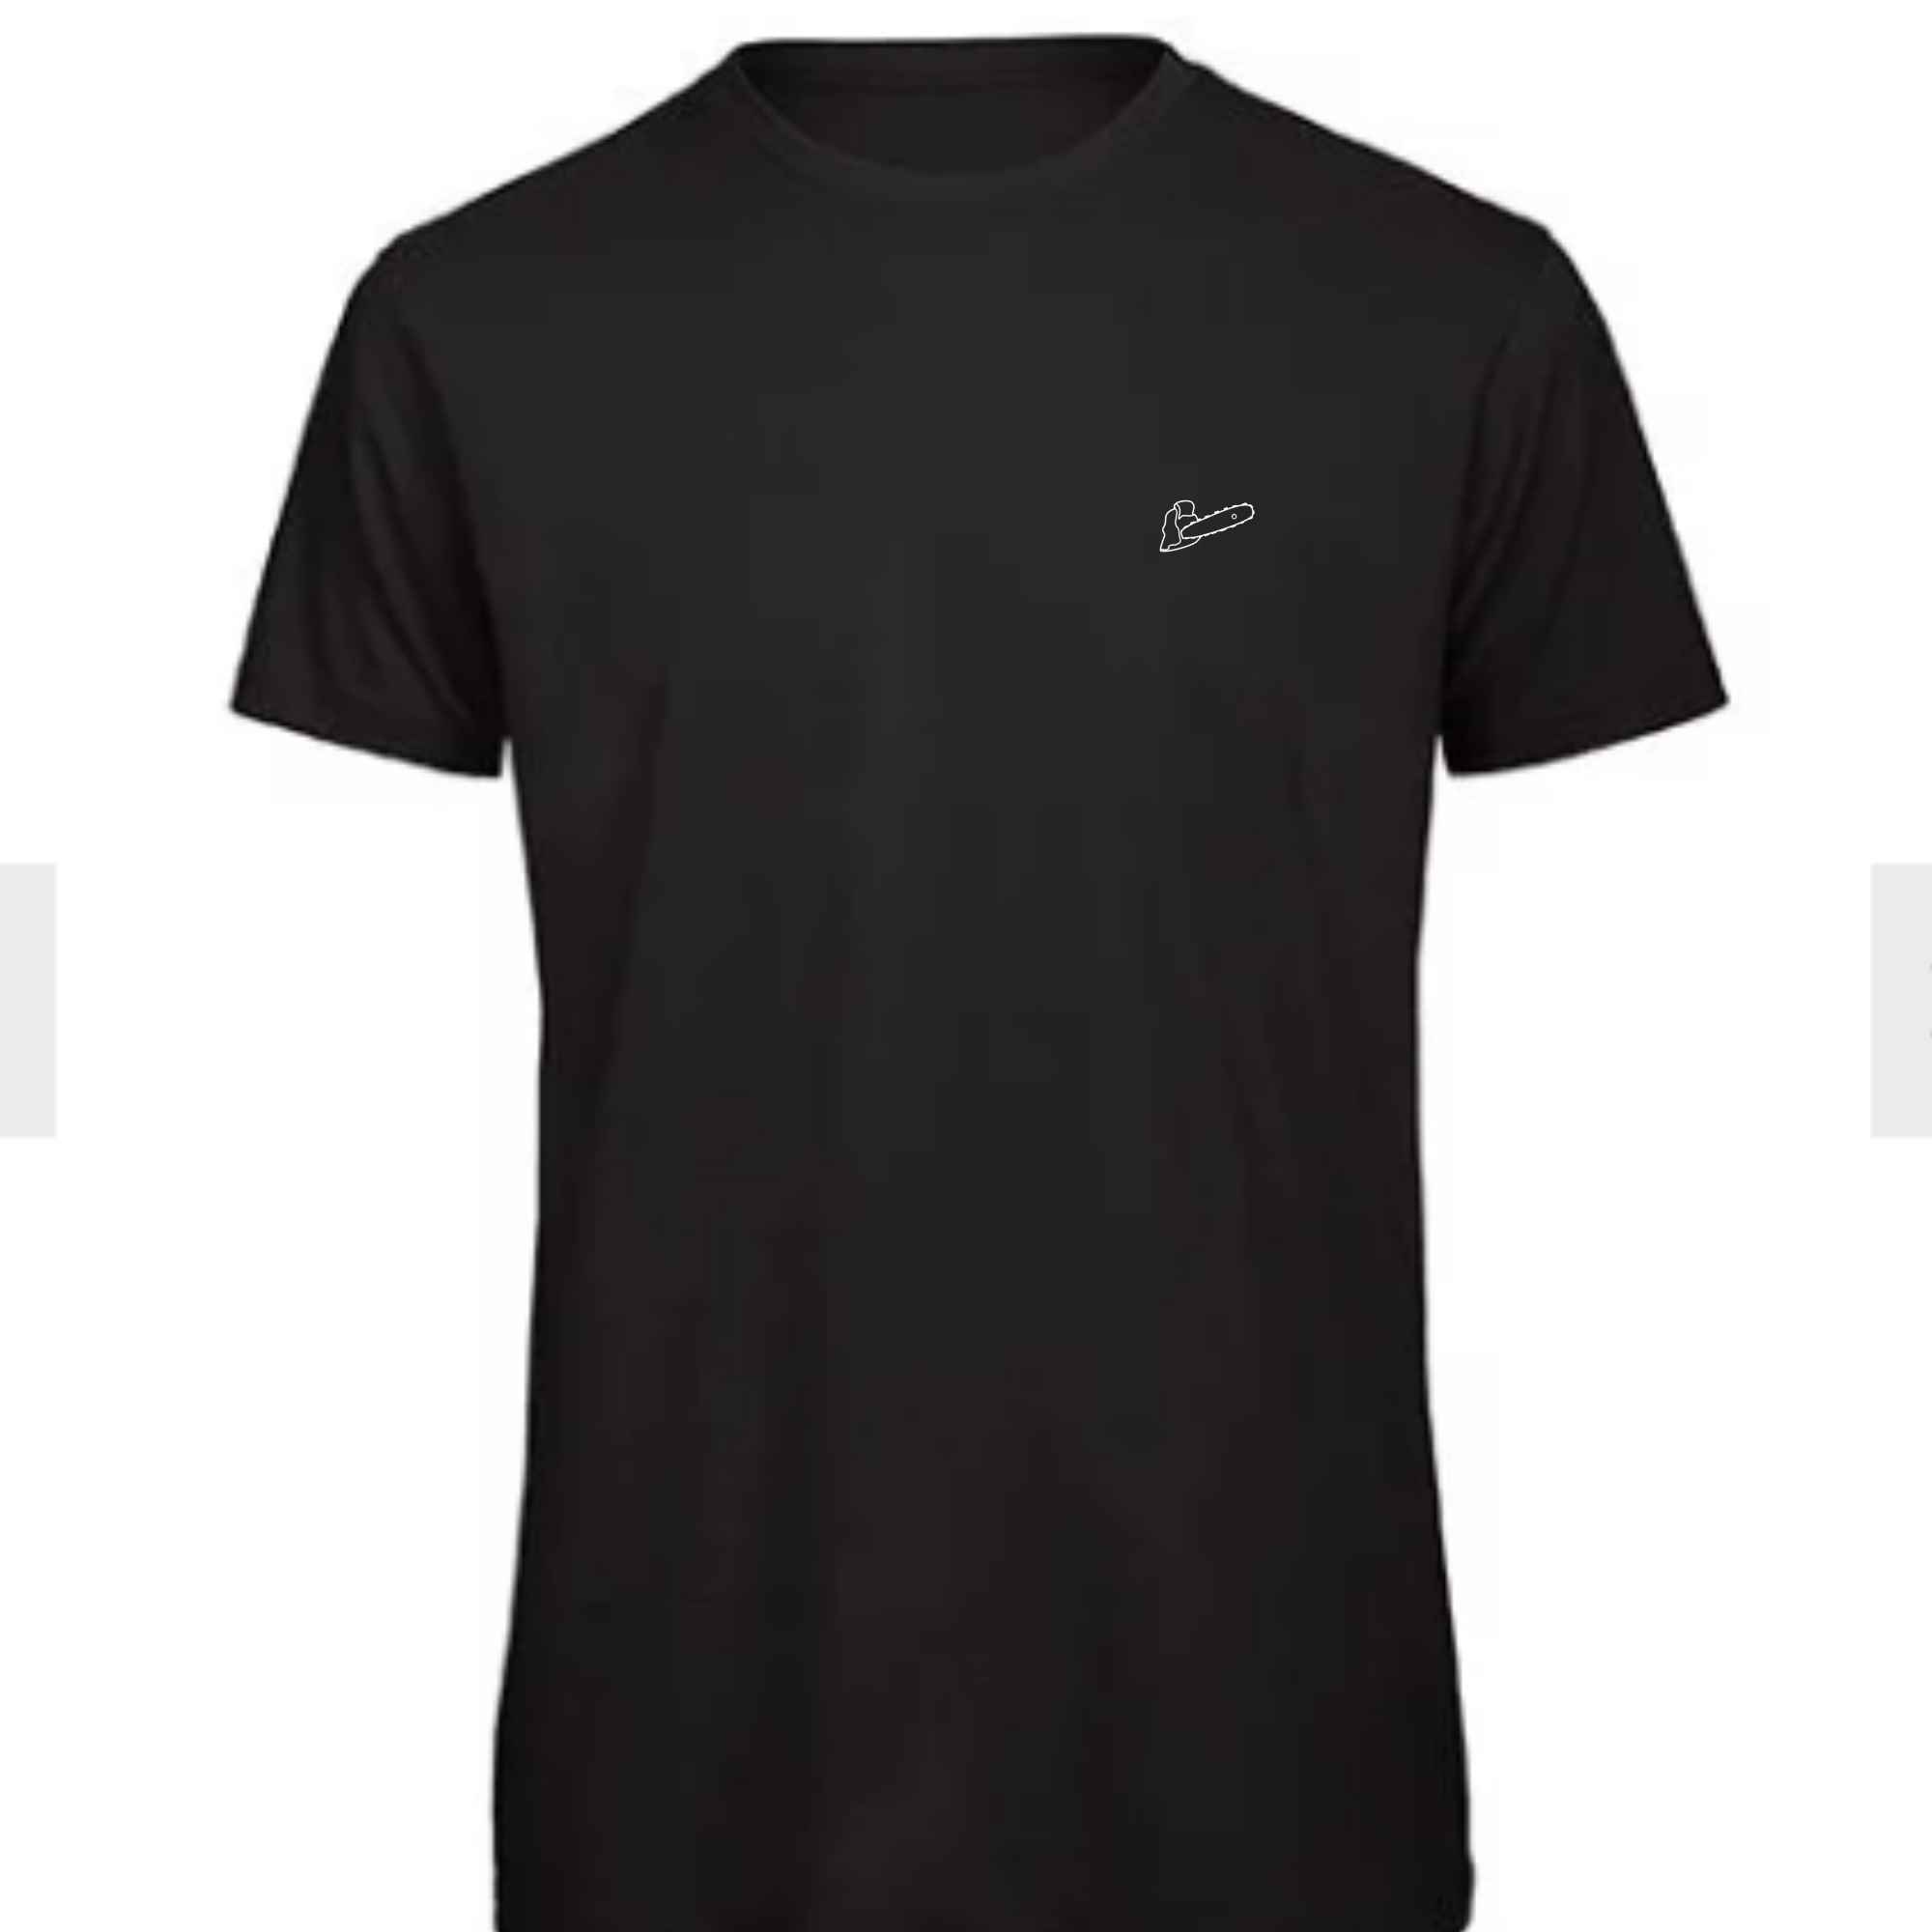 Schwarzes T-Shirt für Männer mit Kettensäge als Motiv auf die Brust gestickt